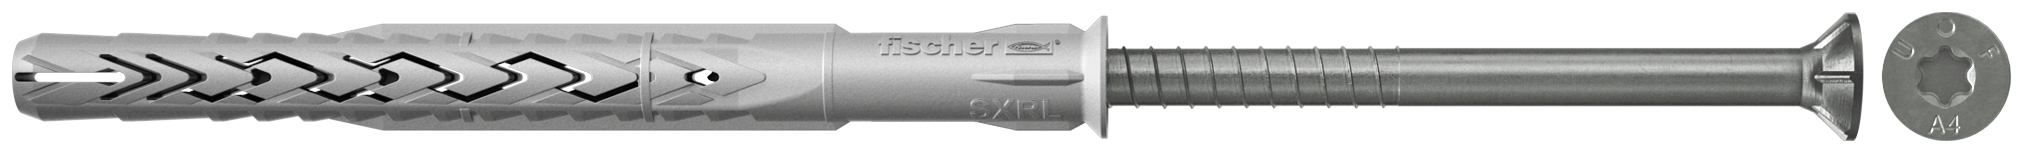 fischer Tasselli prolungati SXRL 10X230 T A4 (1 Pz.) Tassello prolungato in nylon con marcatura CE con vite premontata in acciaio inox A4, T.S.P. impronta torx.